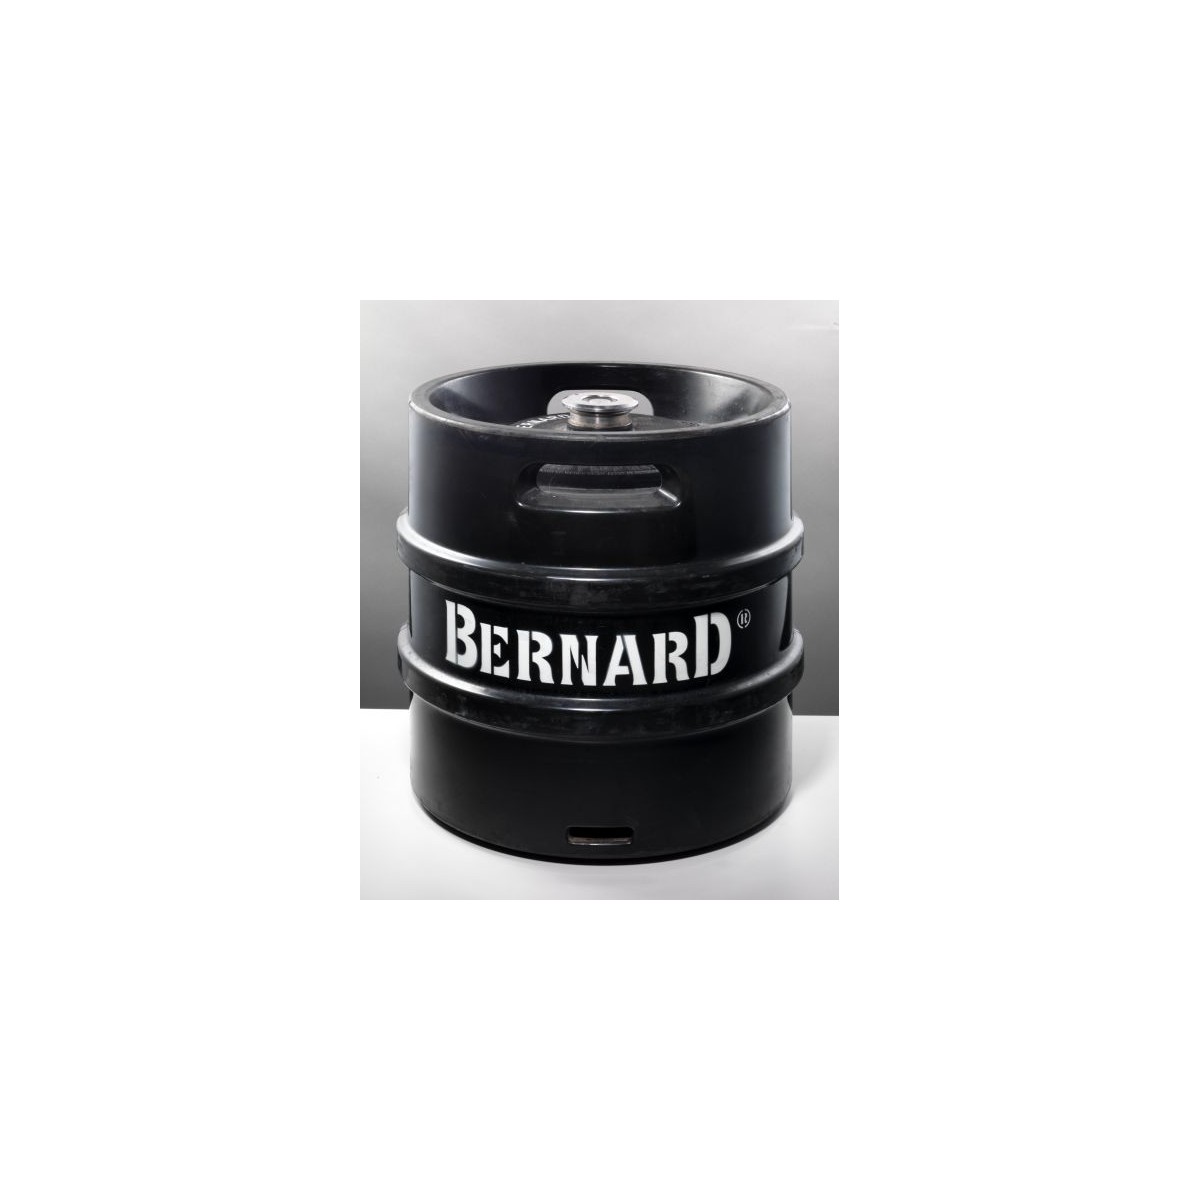 Bernard 12 nefiltrovaný světlý ležák 30l - KEG